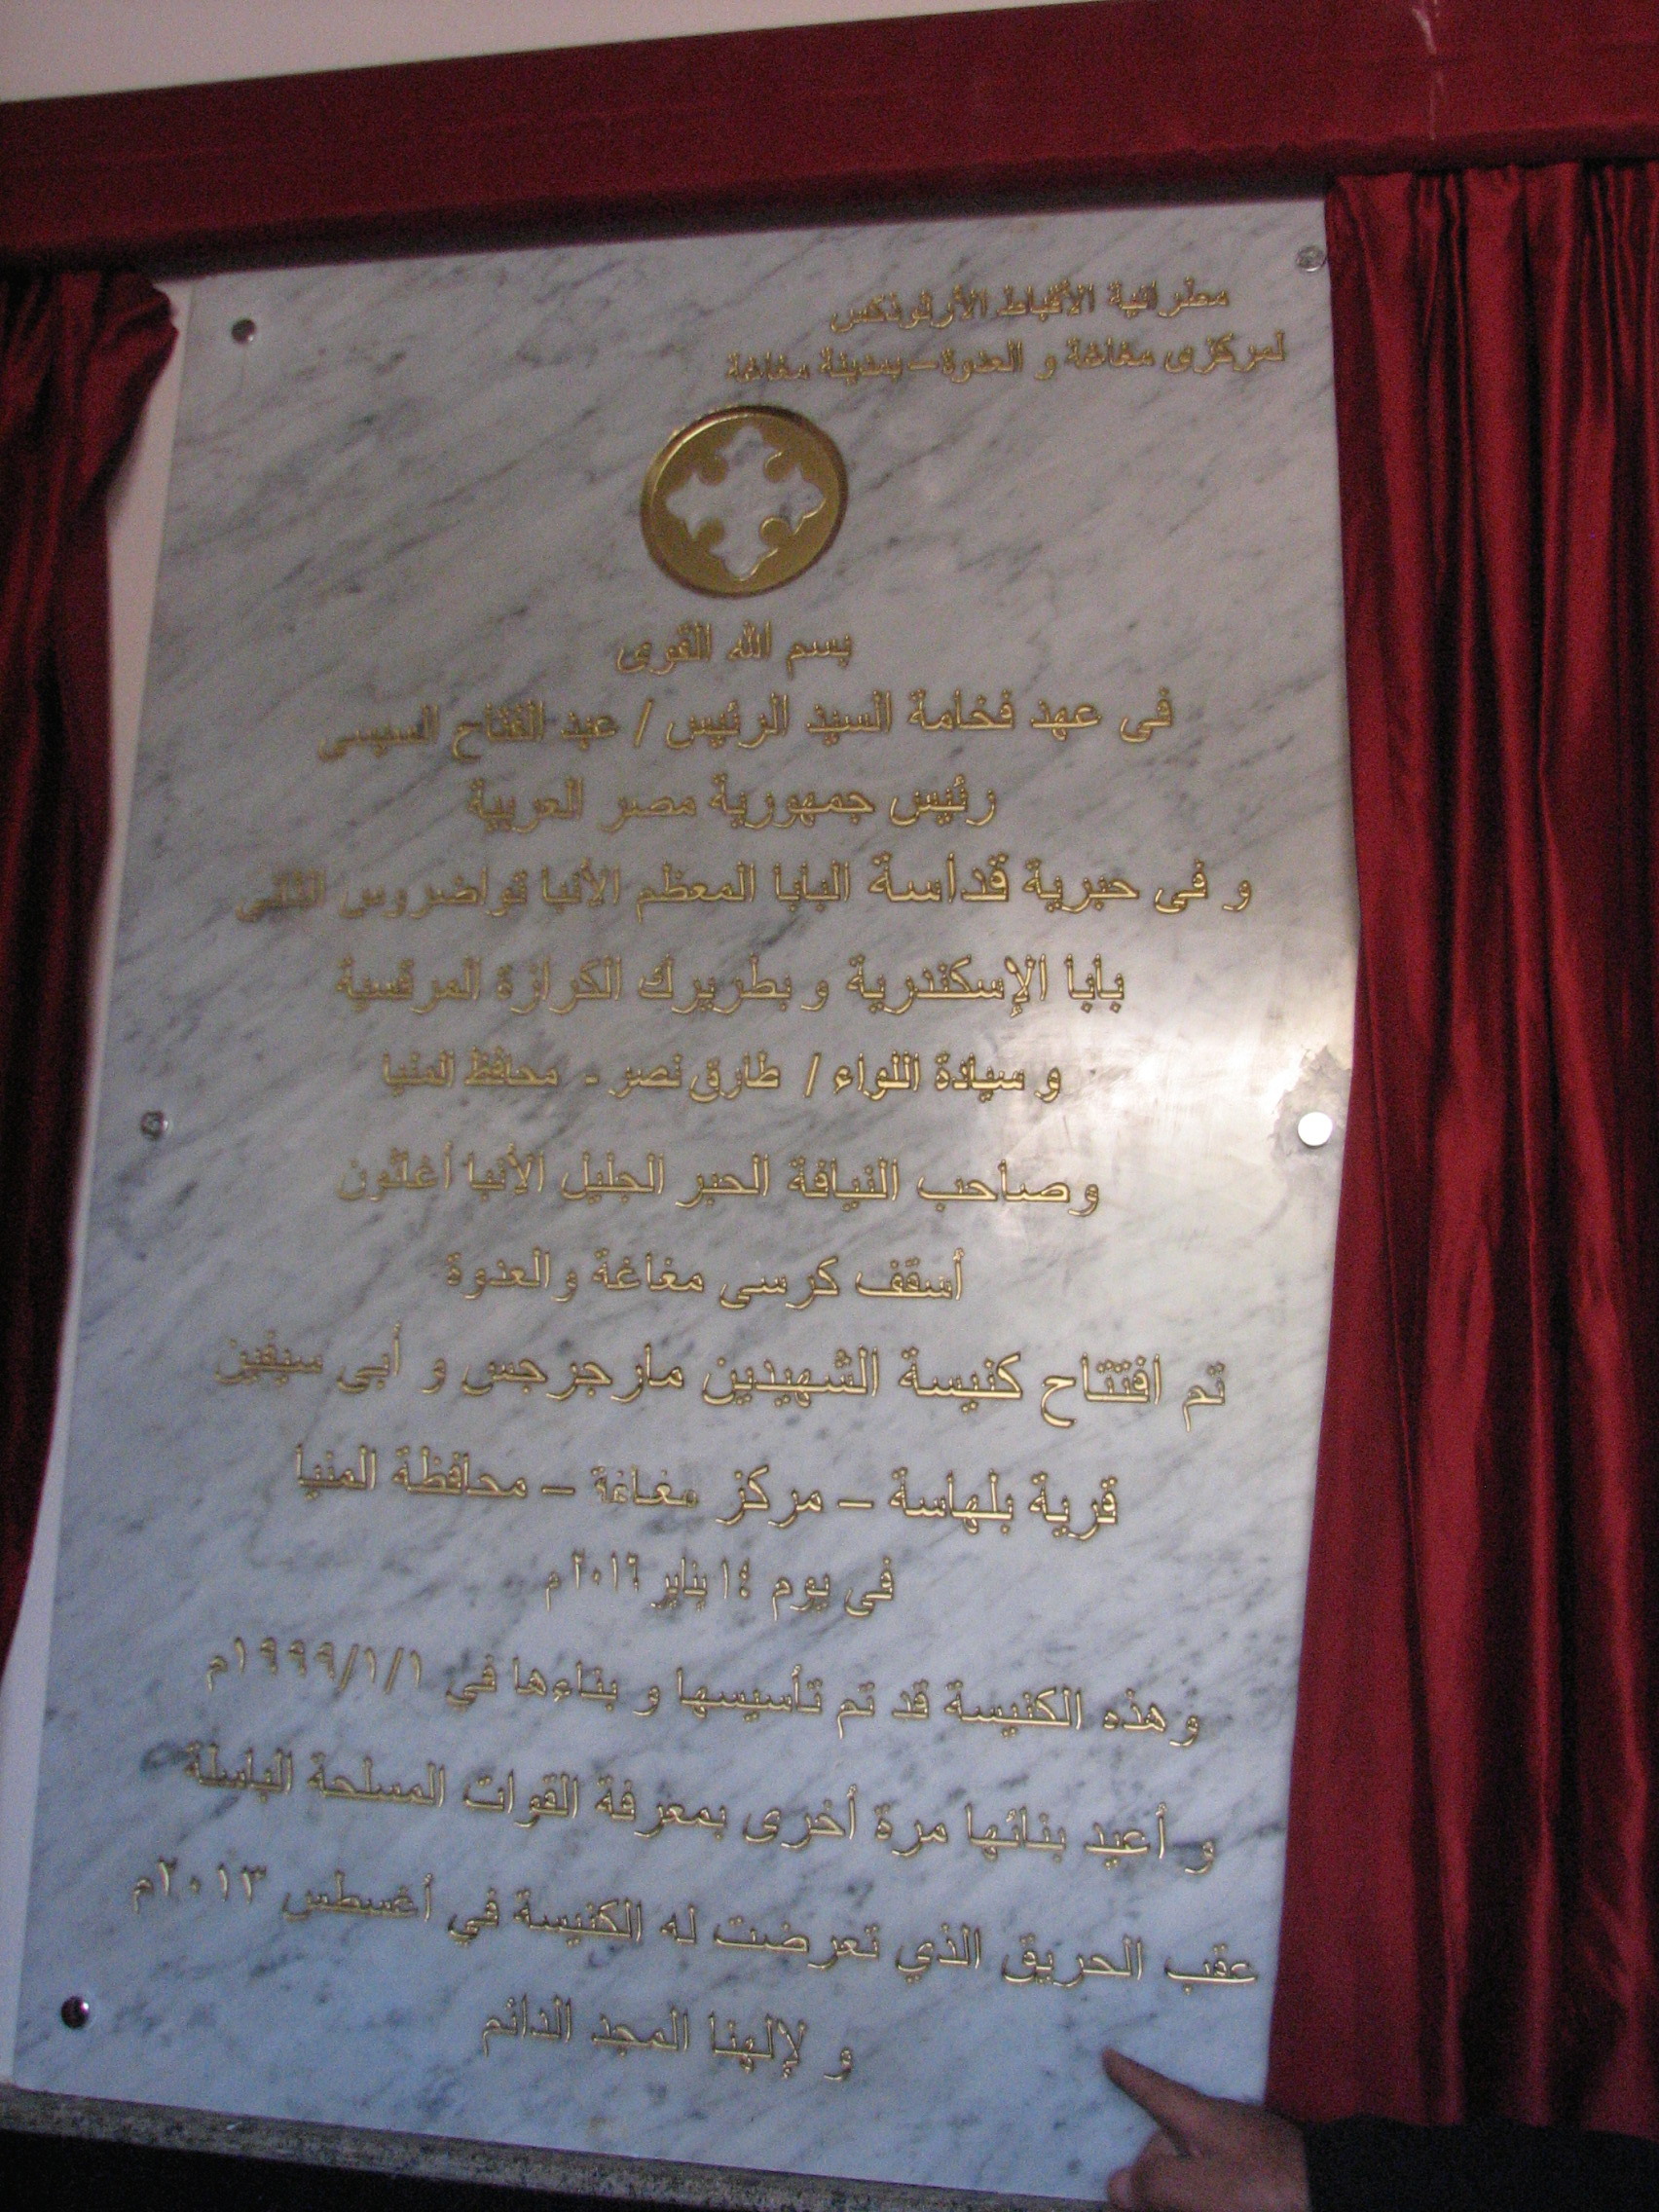 Eine Ehrentafel erinnert an die Einweihung im Januar mit spezieller Erwähnung von Präsident Abdelfatah al-Sisi.